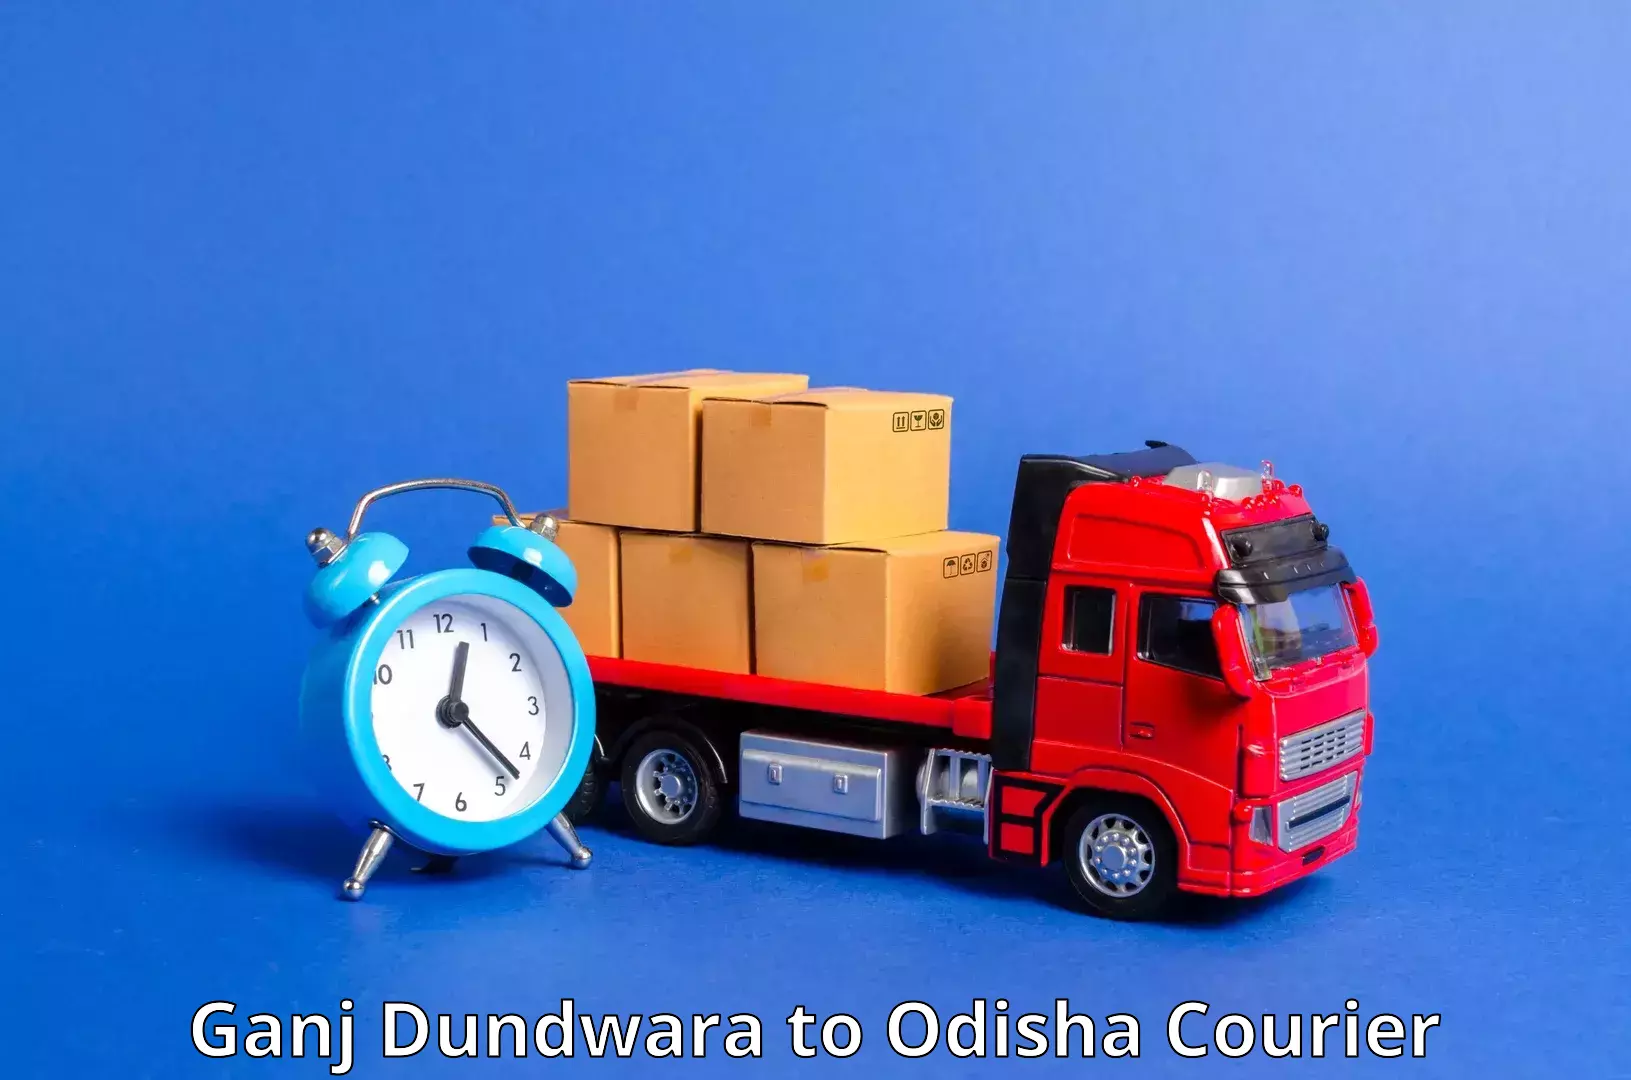 Automated parcel services Ganj Dundwara to Bhanjanagar